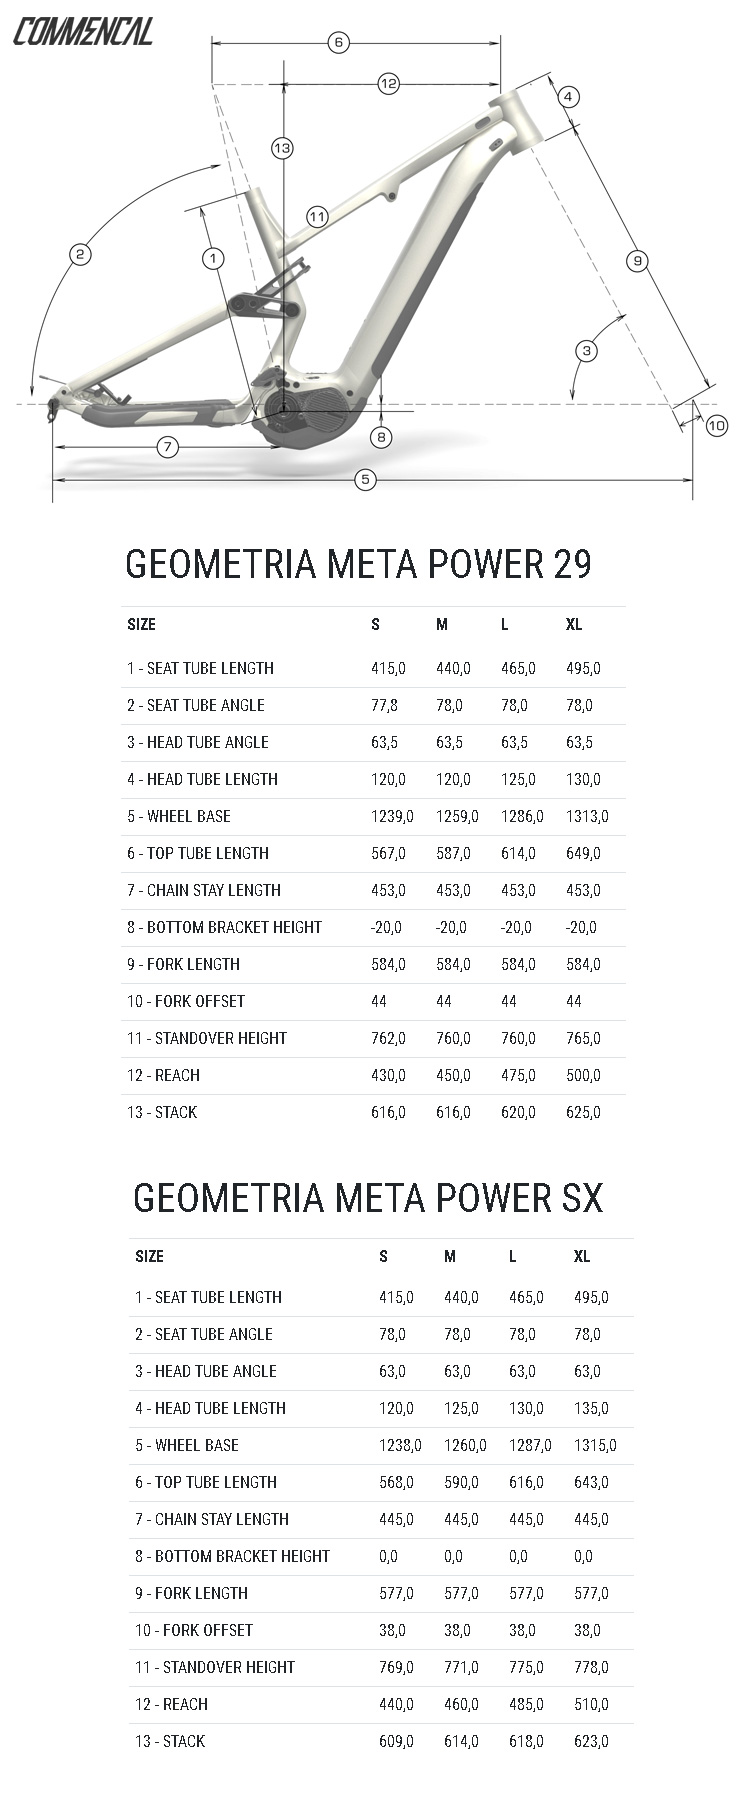 Le tabelle con le misure e le geometrie di modelli di e-MTB della gamma Commencal Meta Power 2021